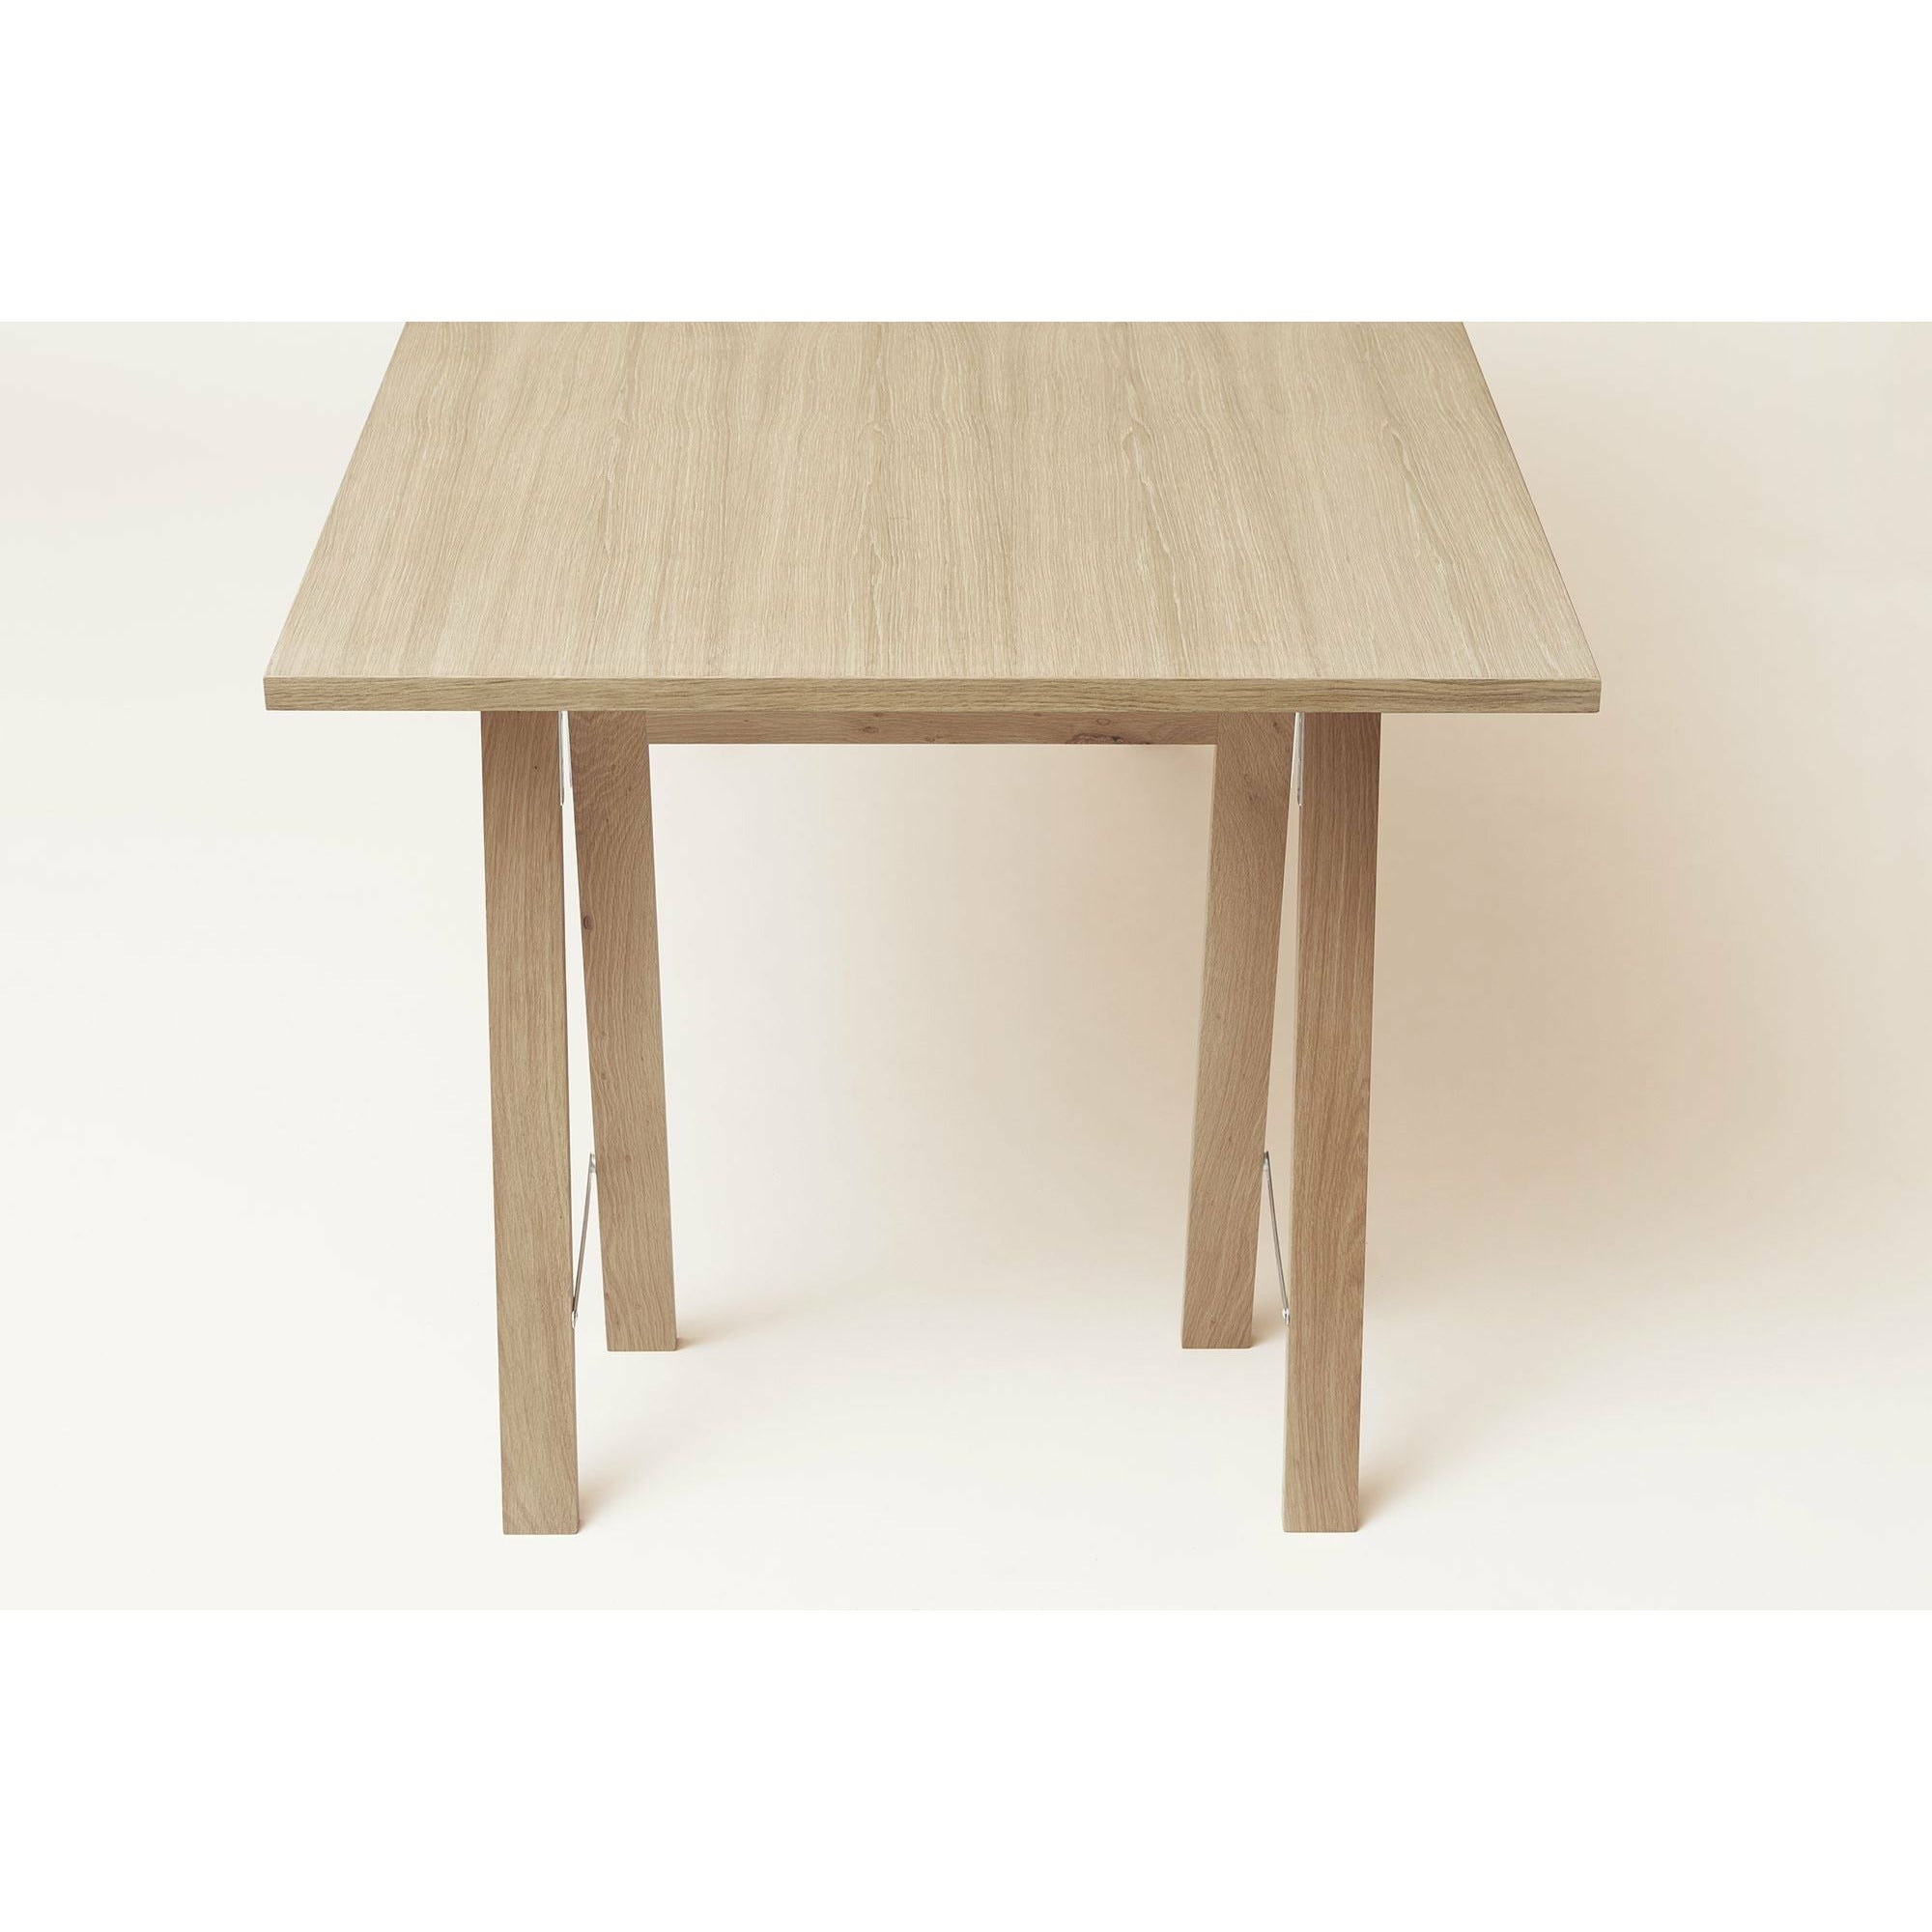 形式和完善的线性桌面125x68厘米。白油橡木